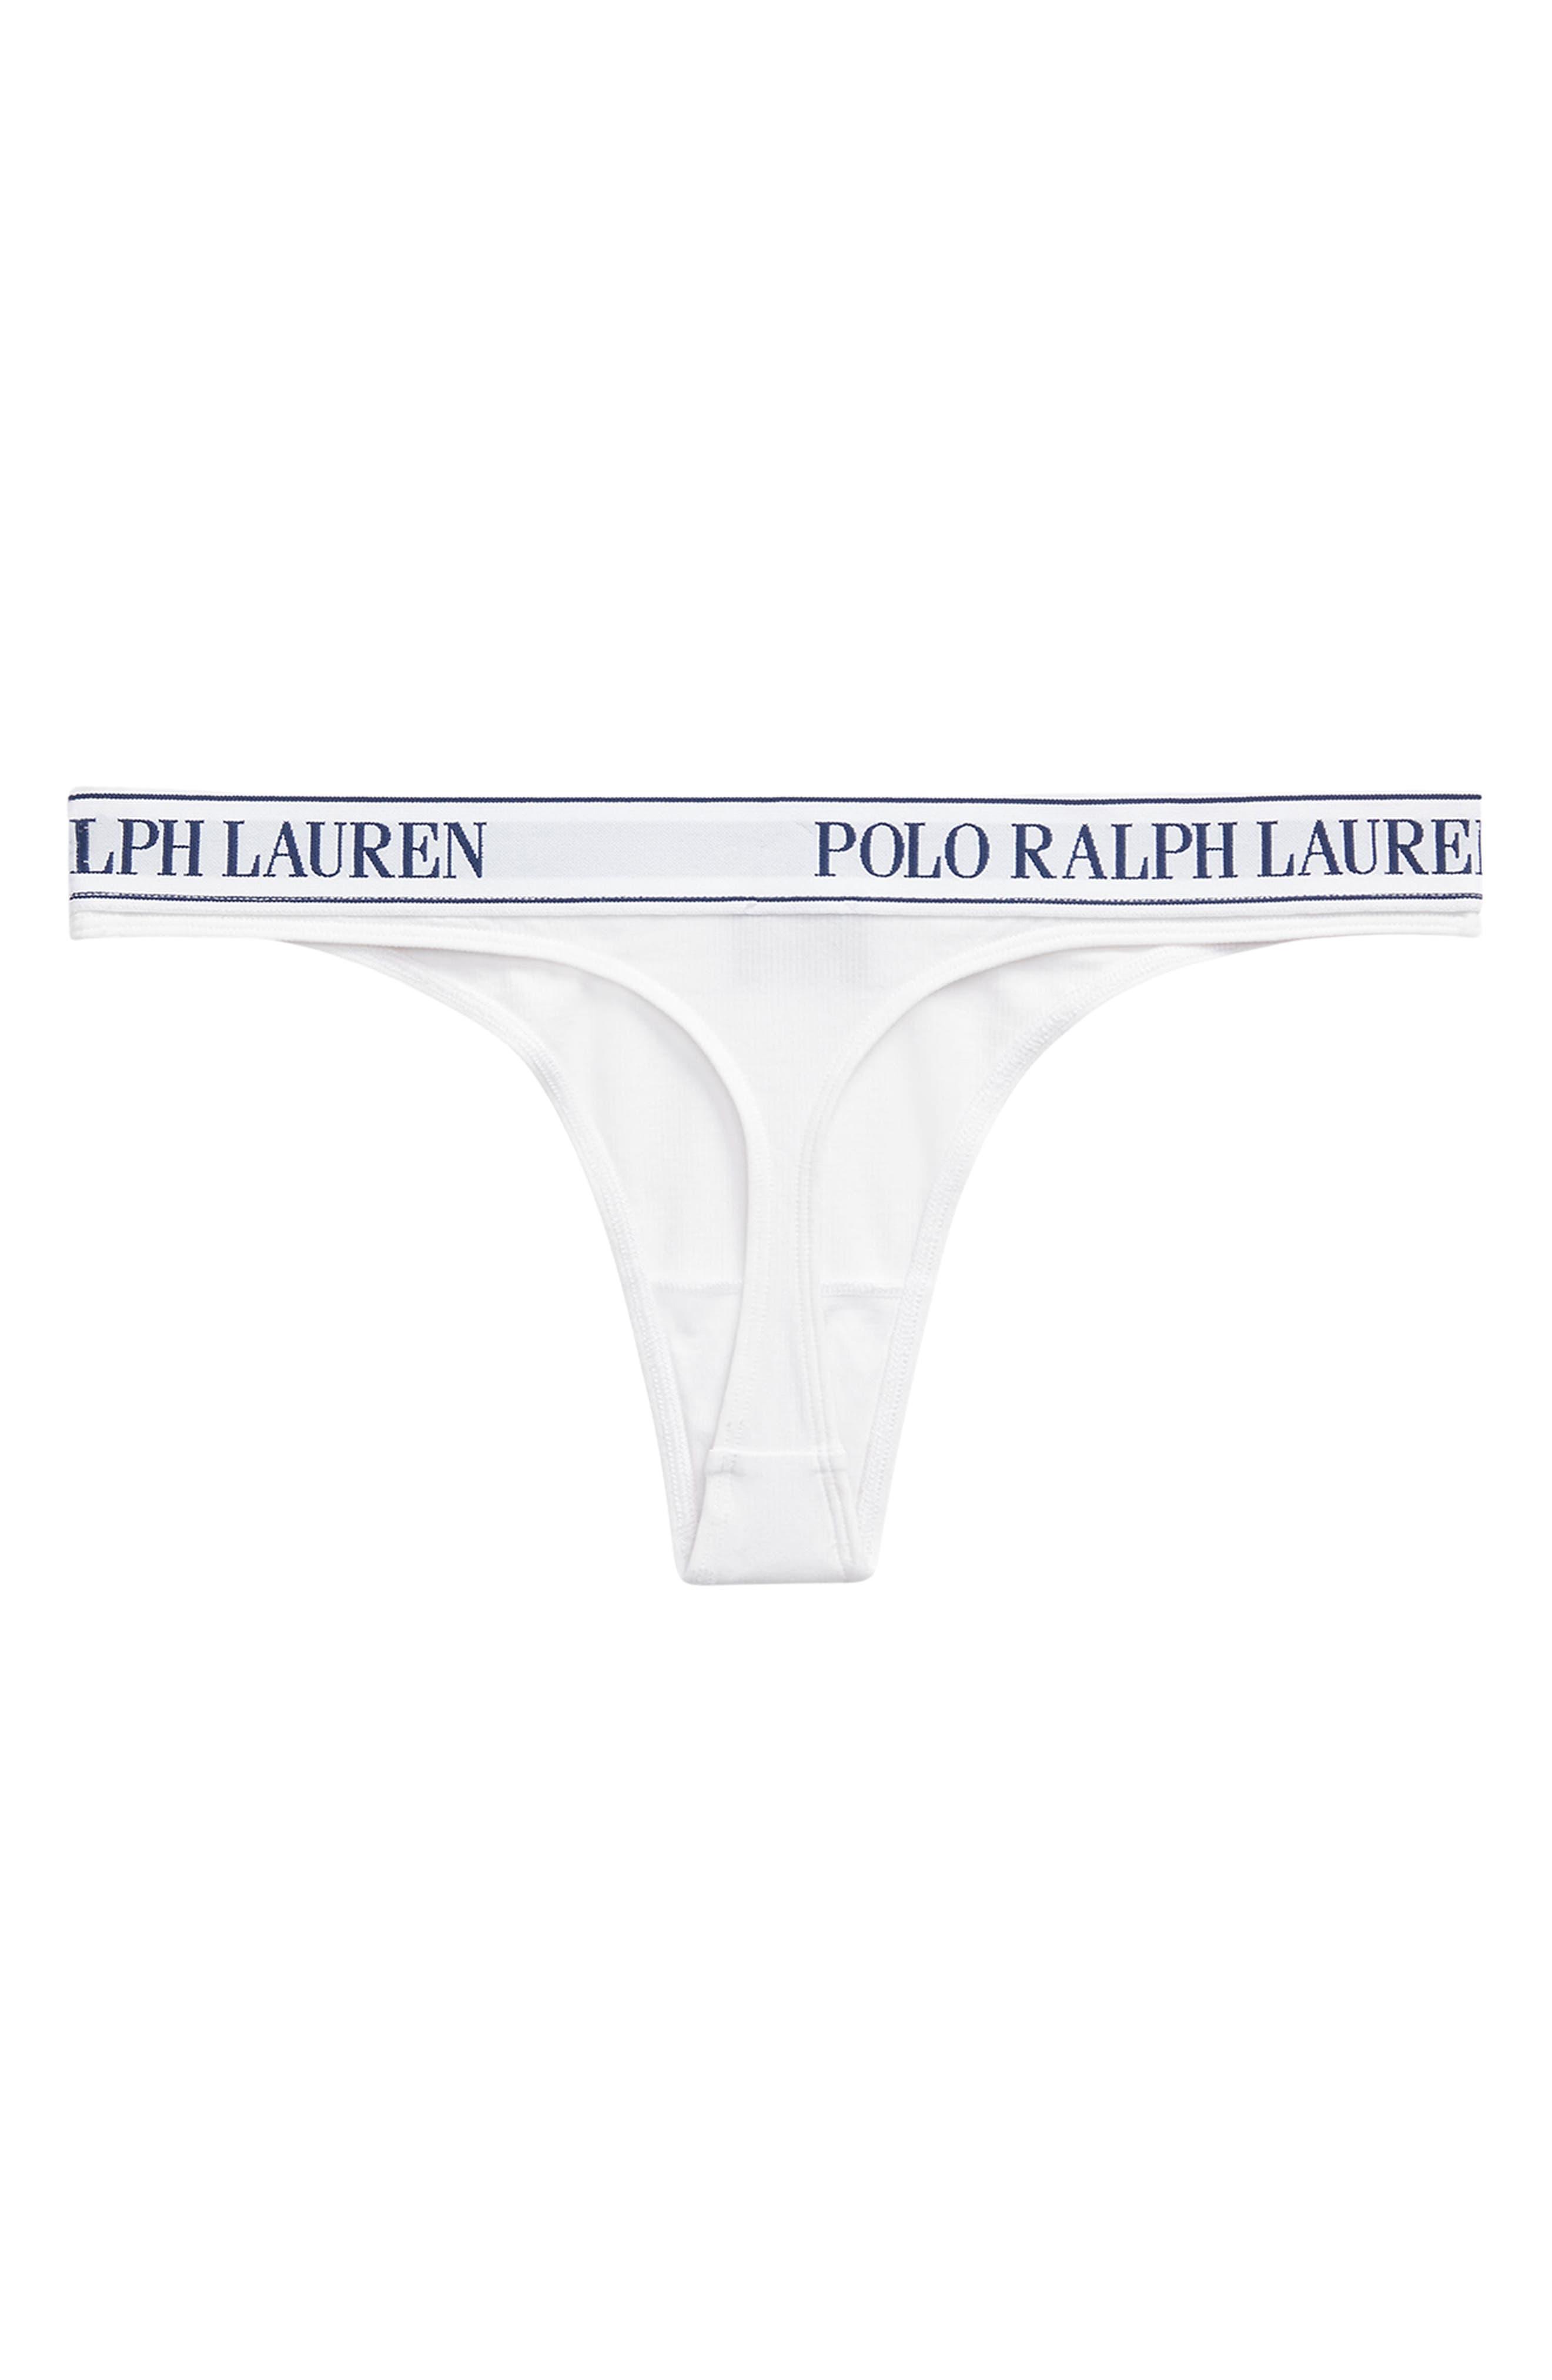 Polo Ralph Lauren High Waist Cotton Blend Tanga Panties